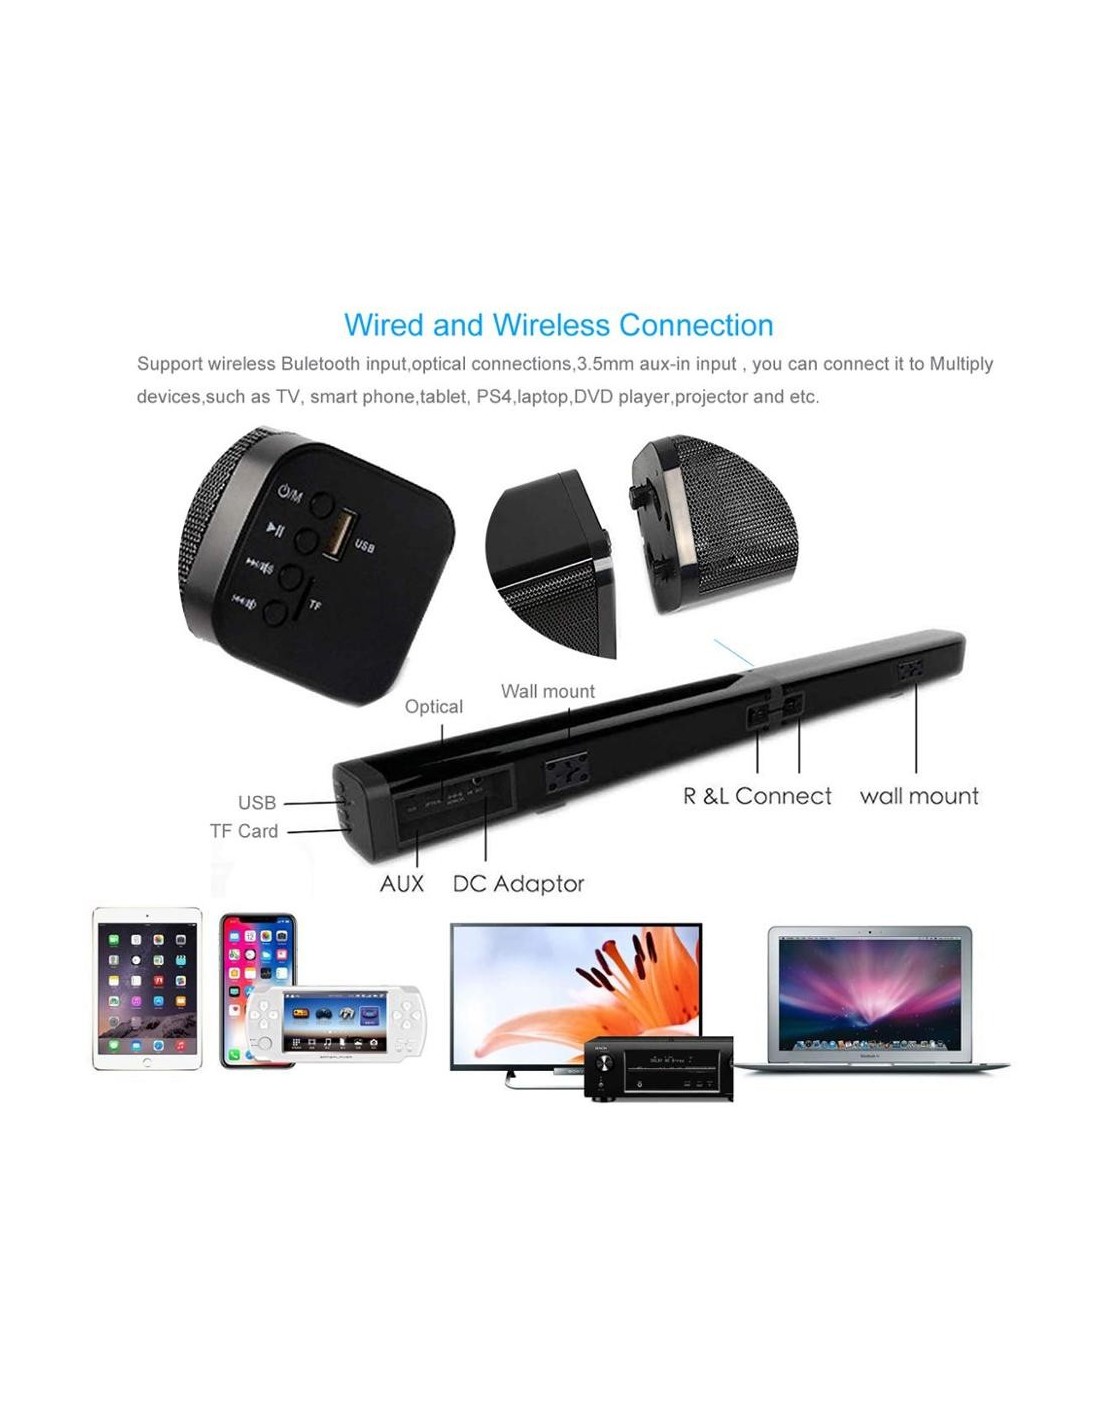 supporto Bluetooth/AUX/RCA/USB/ingresso ottico a parete Soundbar Soundbar Soundlink 60 W Wireless Bluetooth 5.0 TV Soundbar altoparlante home theatre